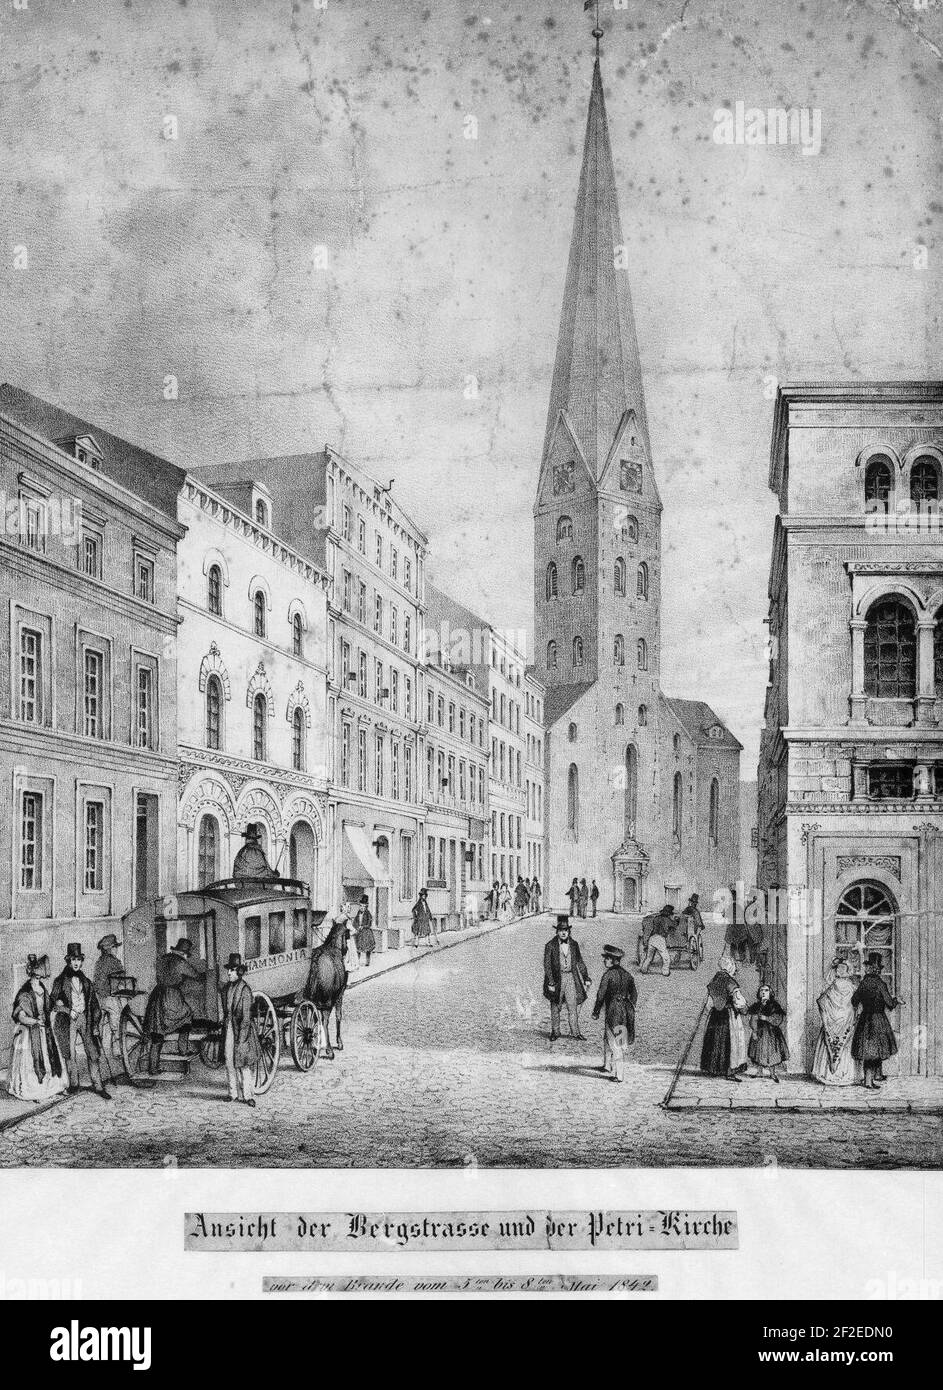 Ansicht der Bergstrasse und der Petri-Kirche vor dem Brande vom 5-ten bis 8-ten Mai 1842 (1850). Stock Photo